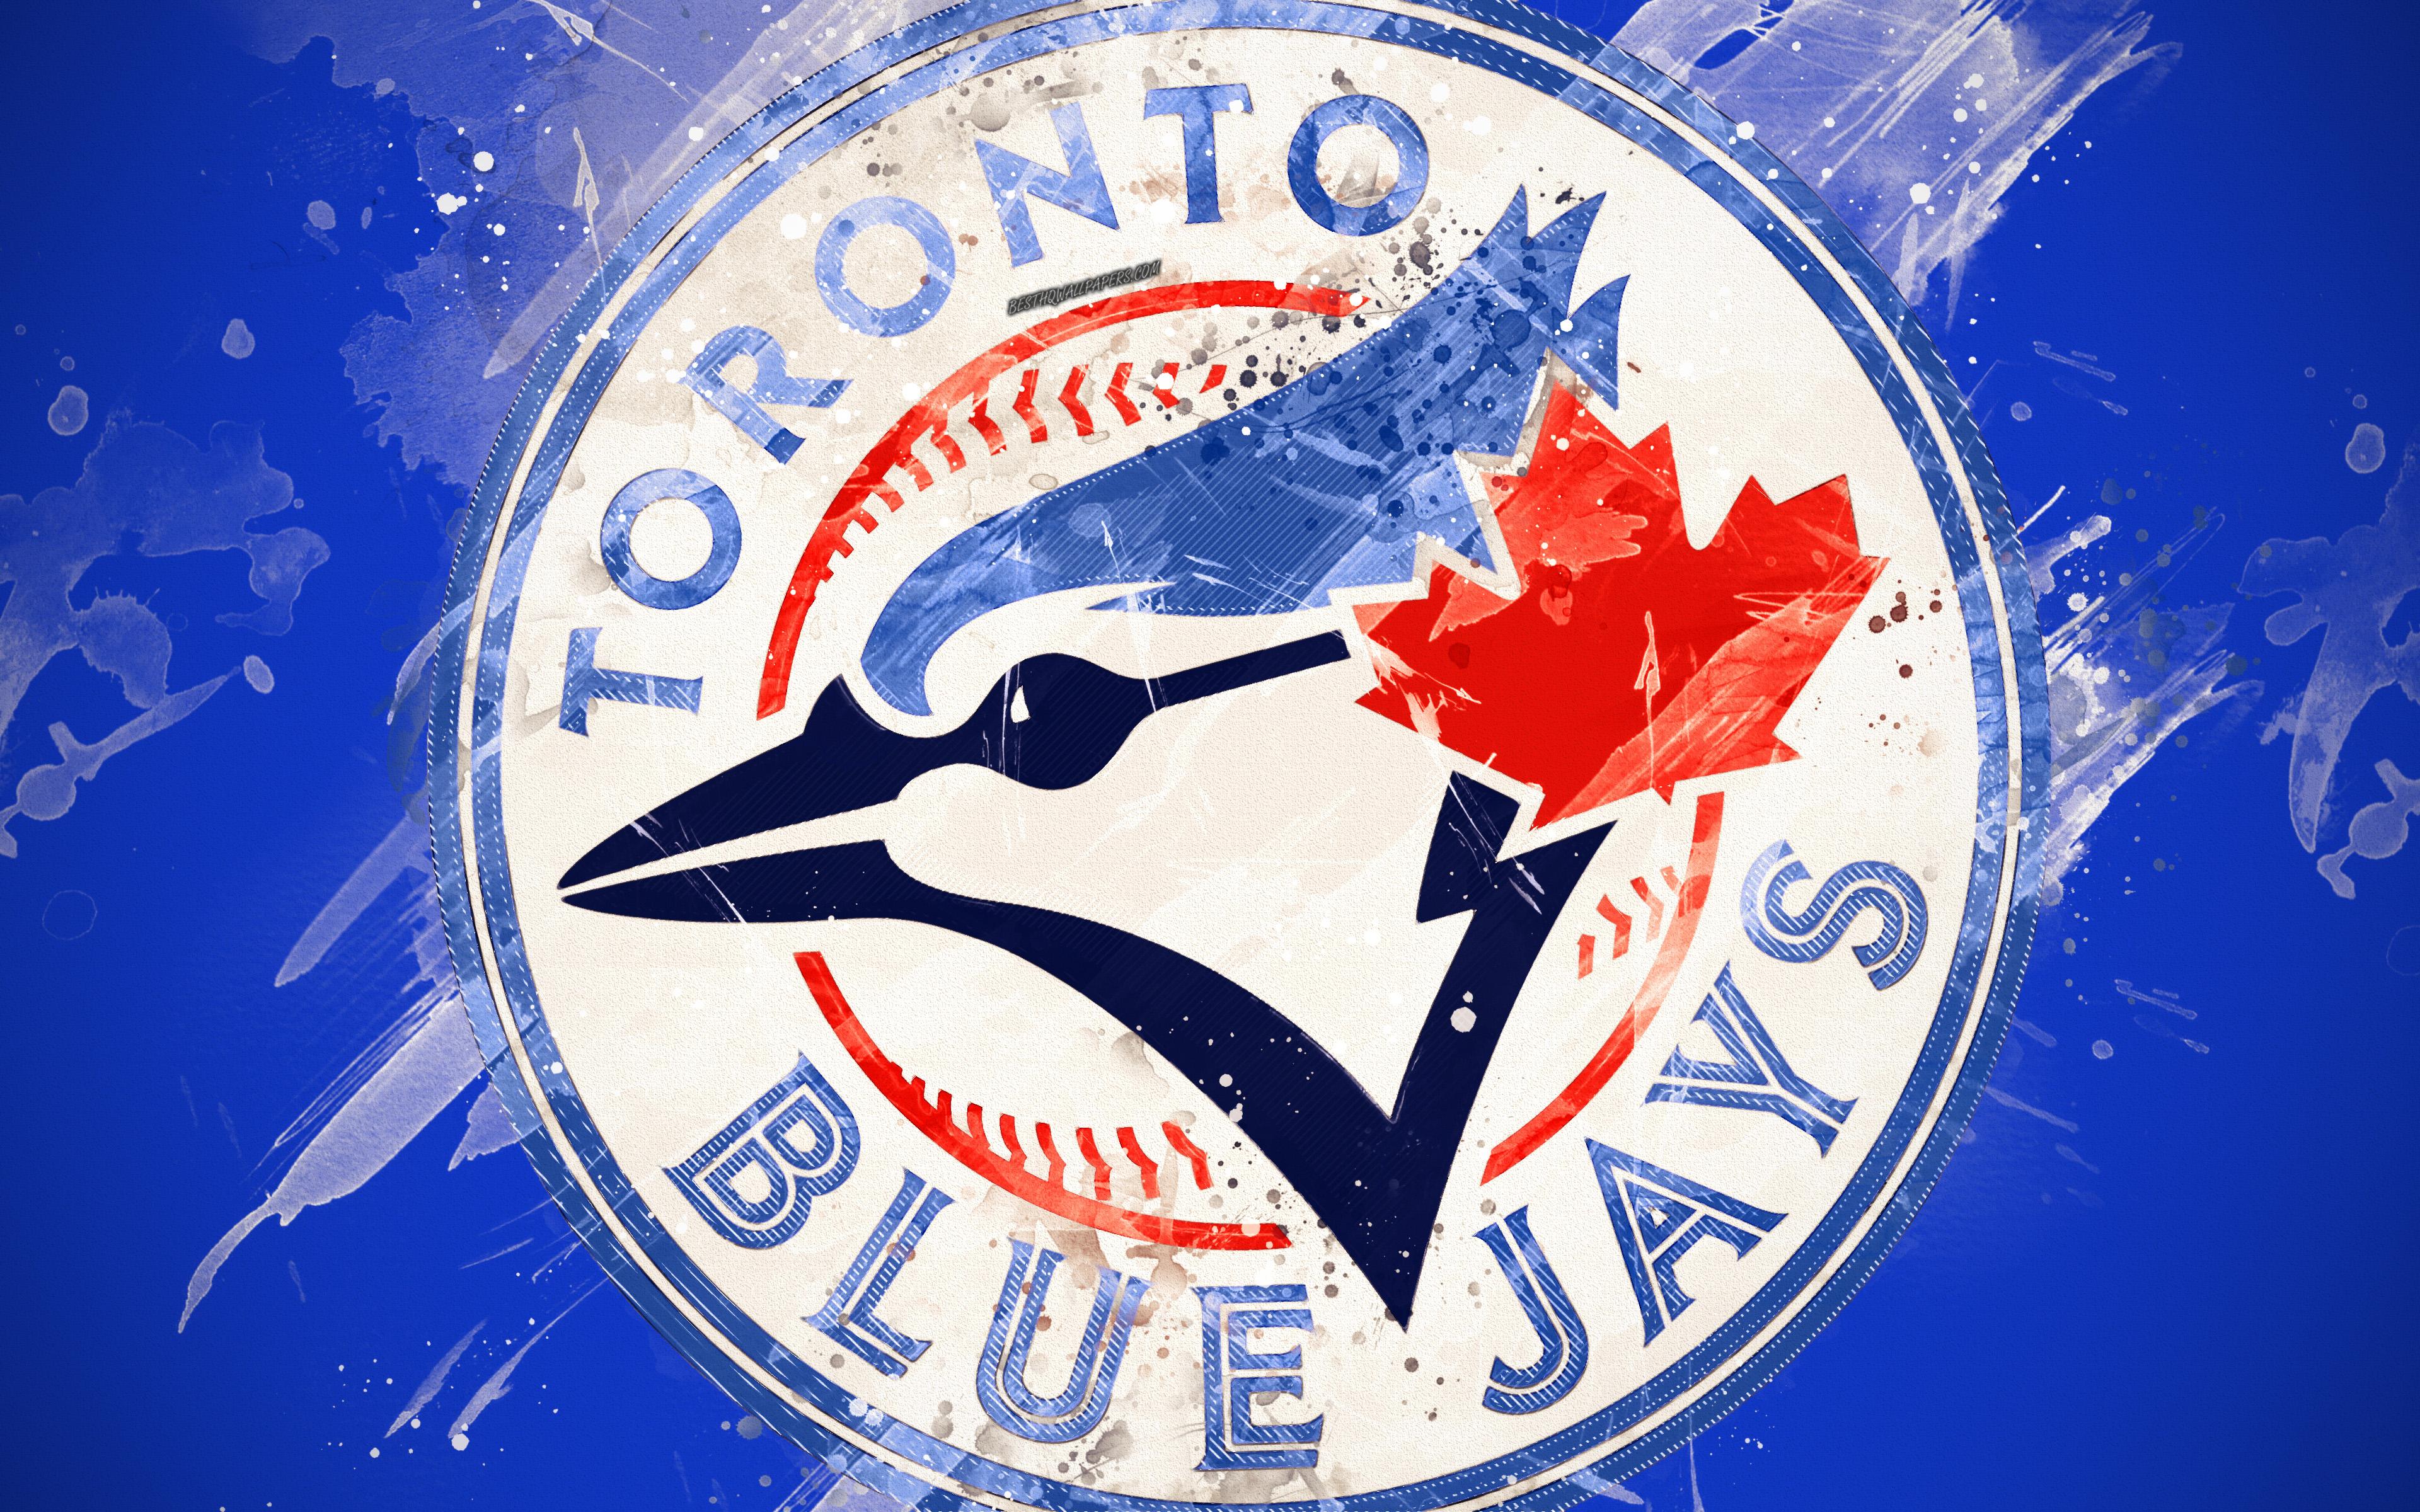 Download wallpaper Toronto Blue Jays, 4k, grunge art, logo